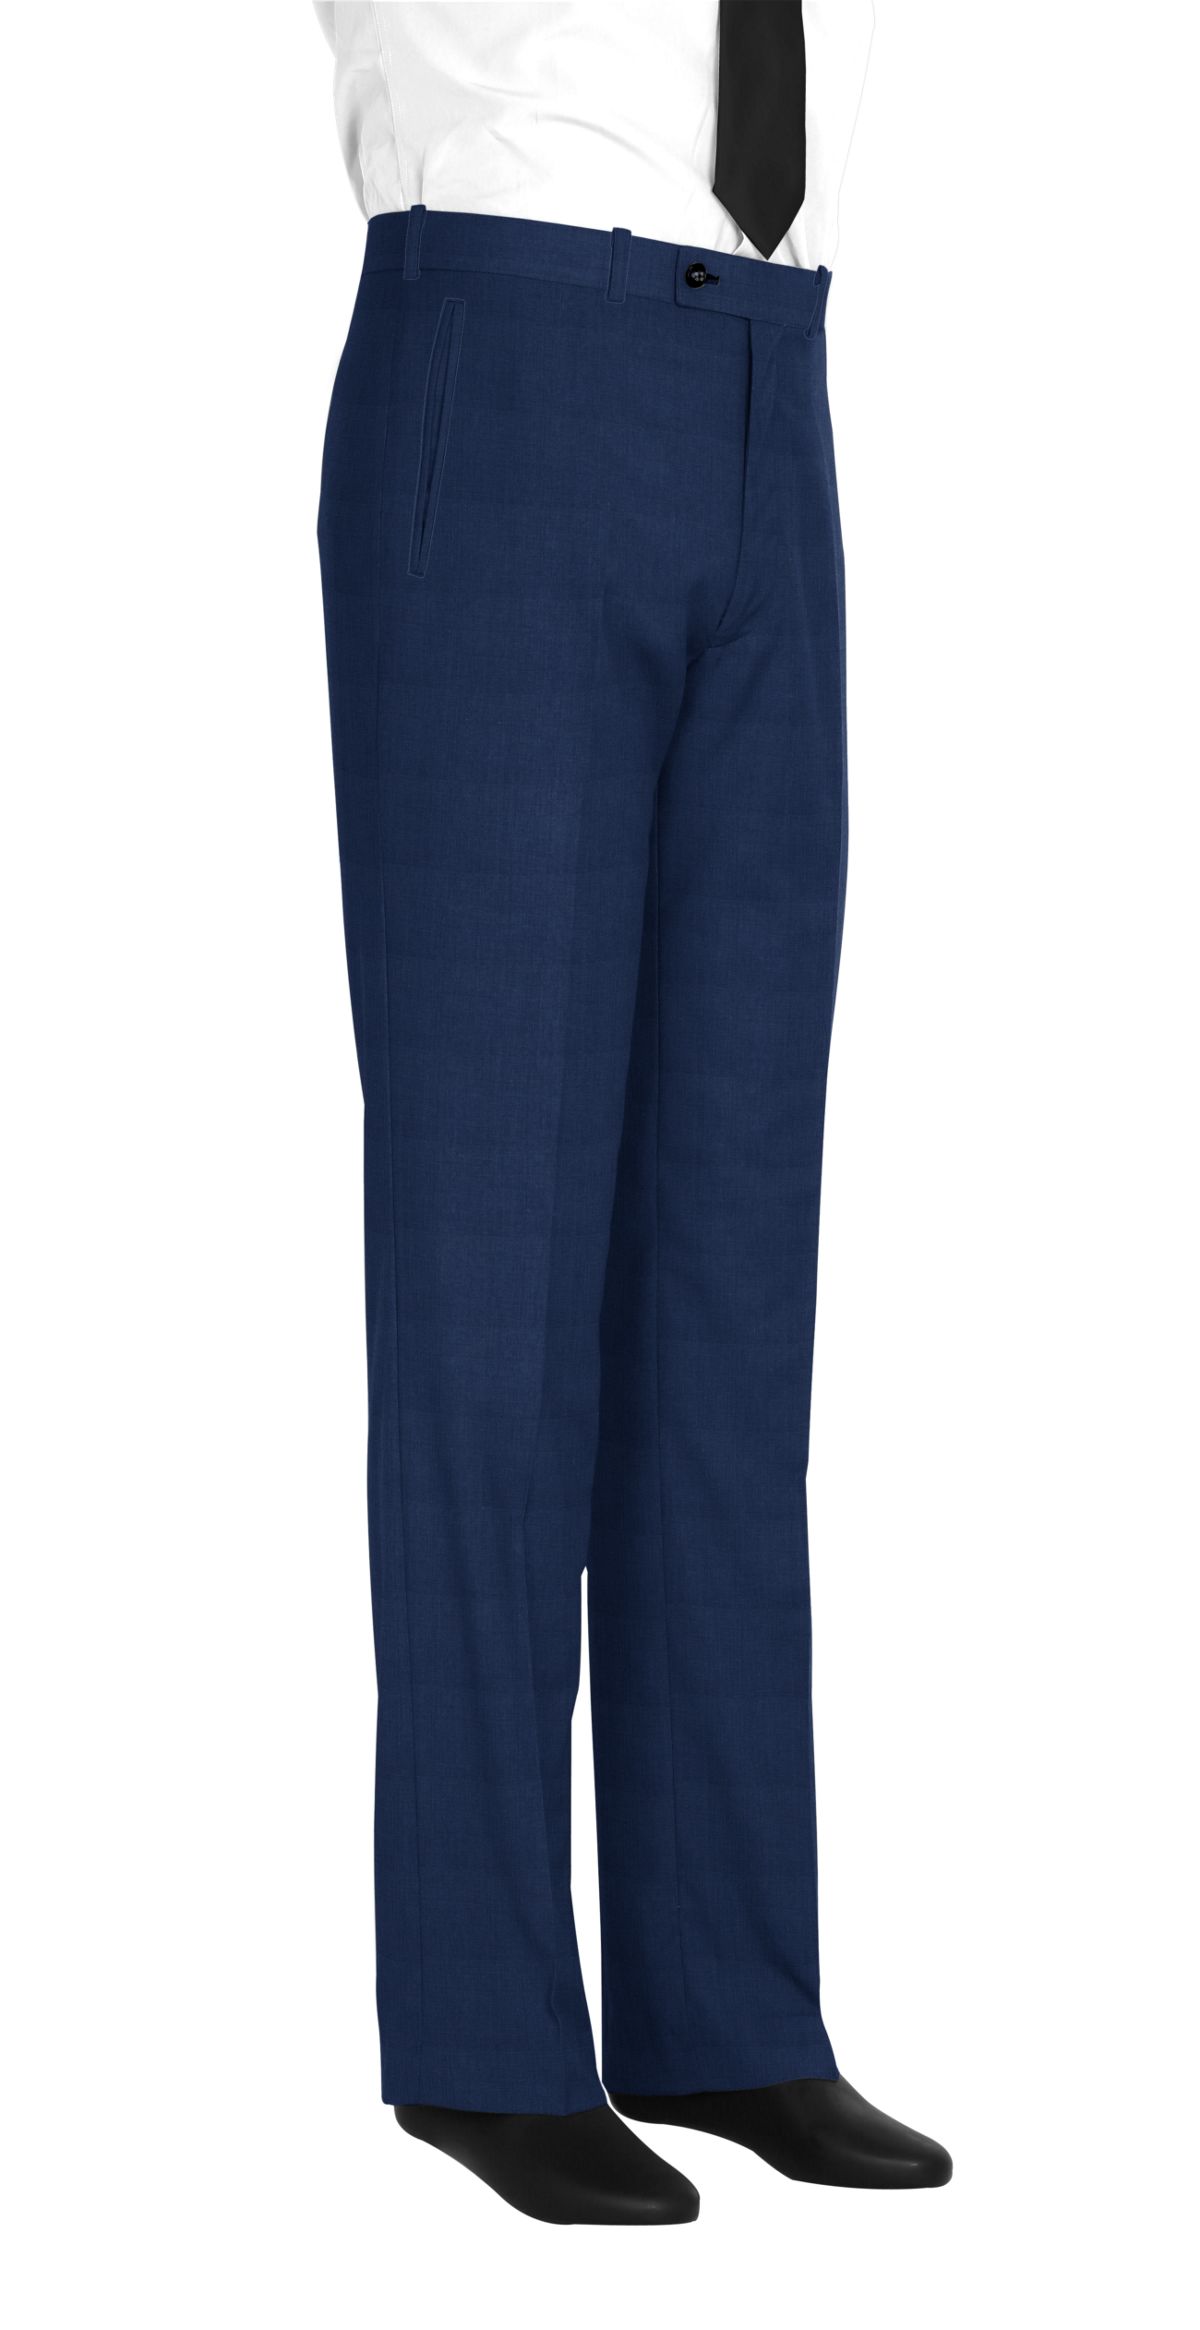 Pantalon pour homme en tissu bleu uni